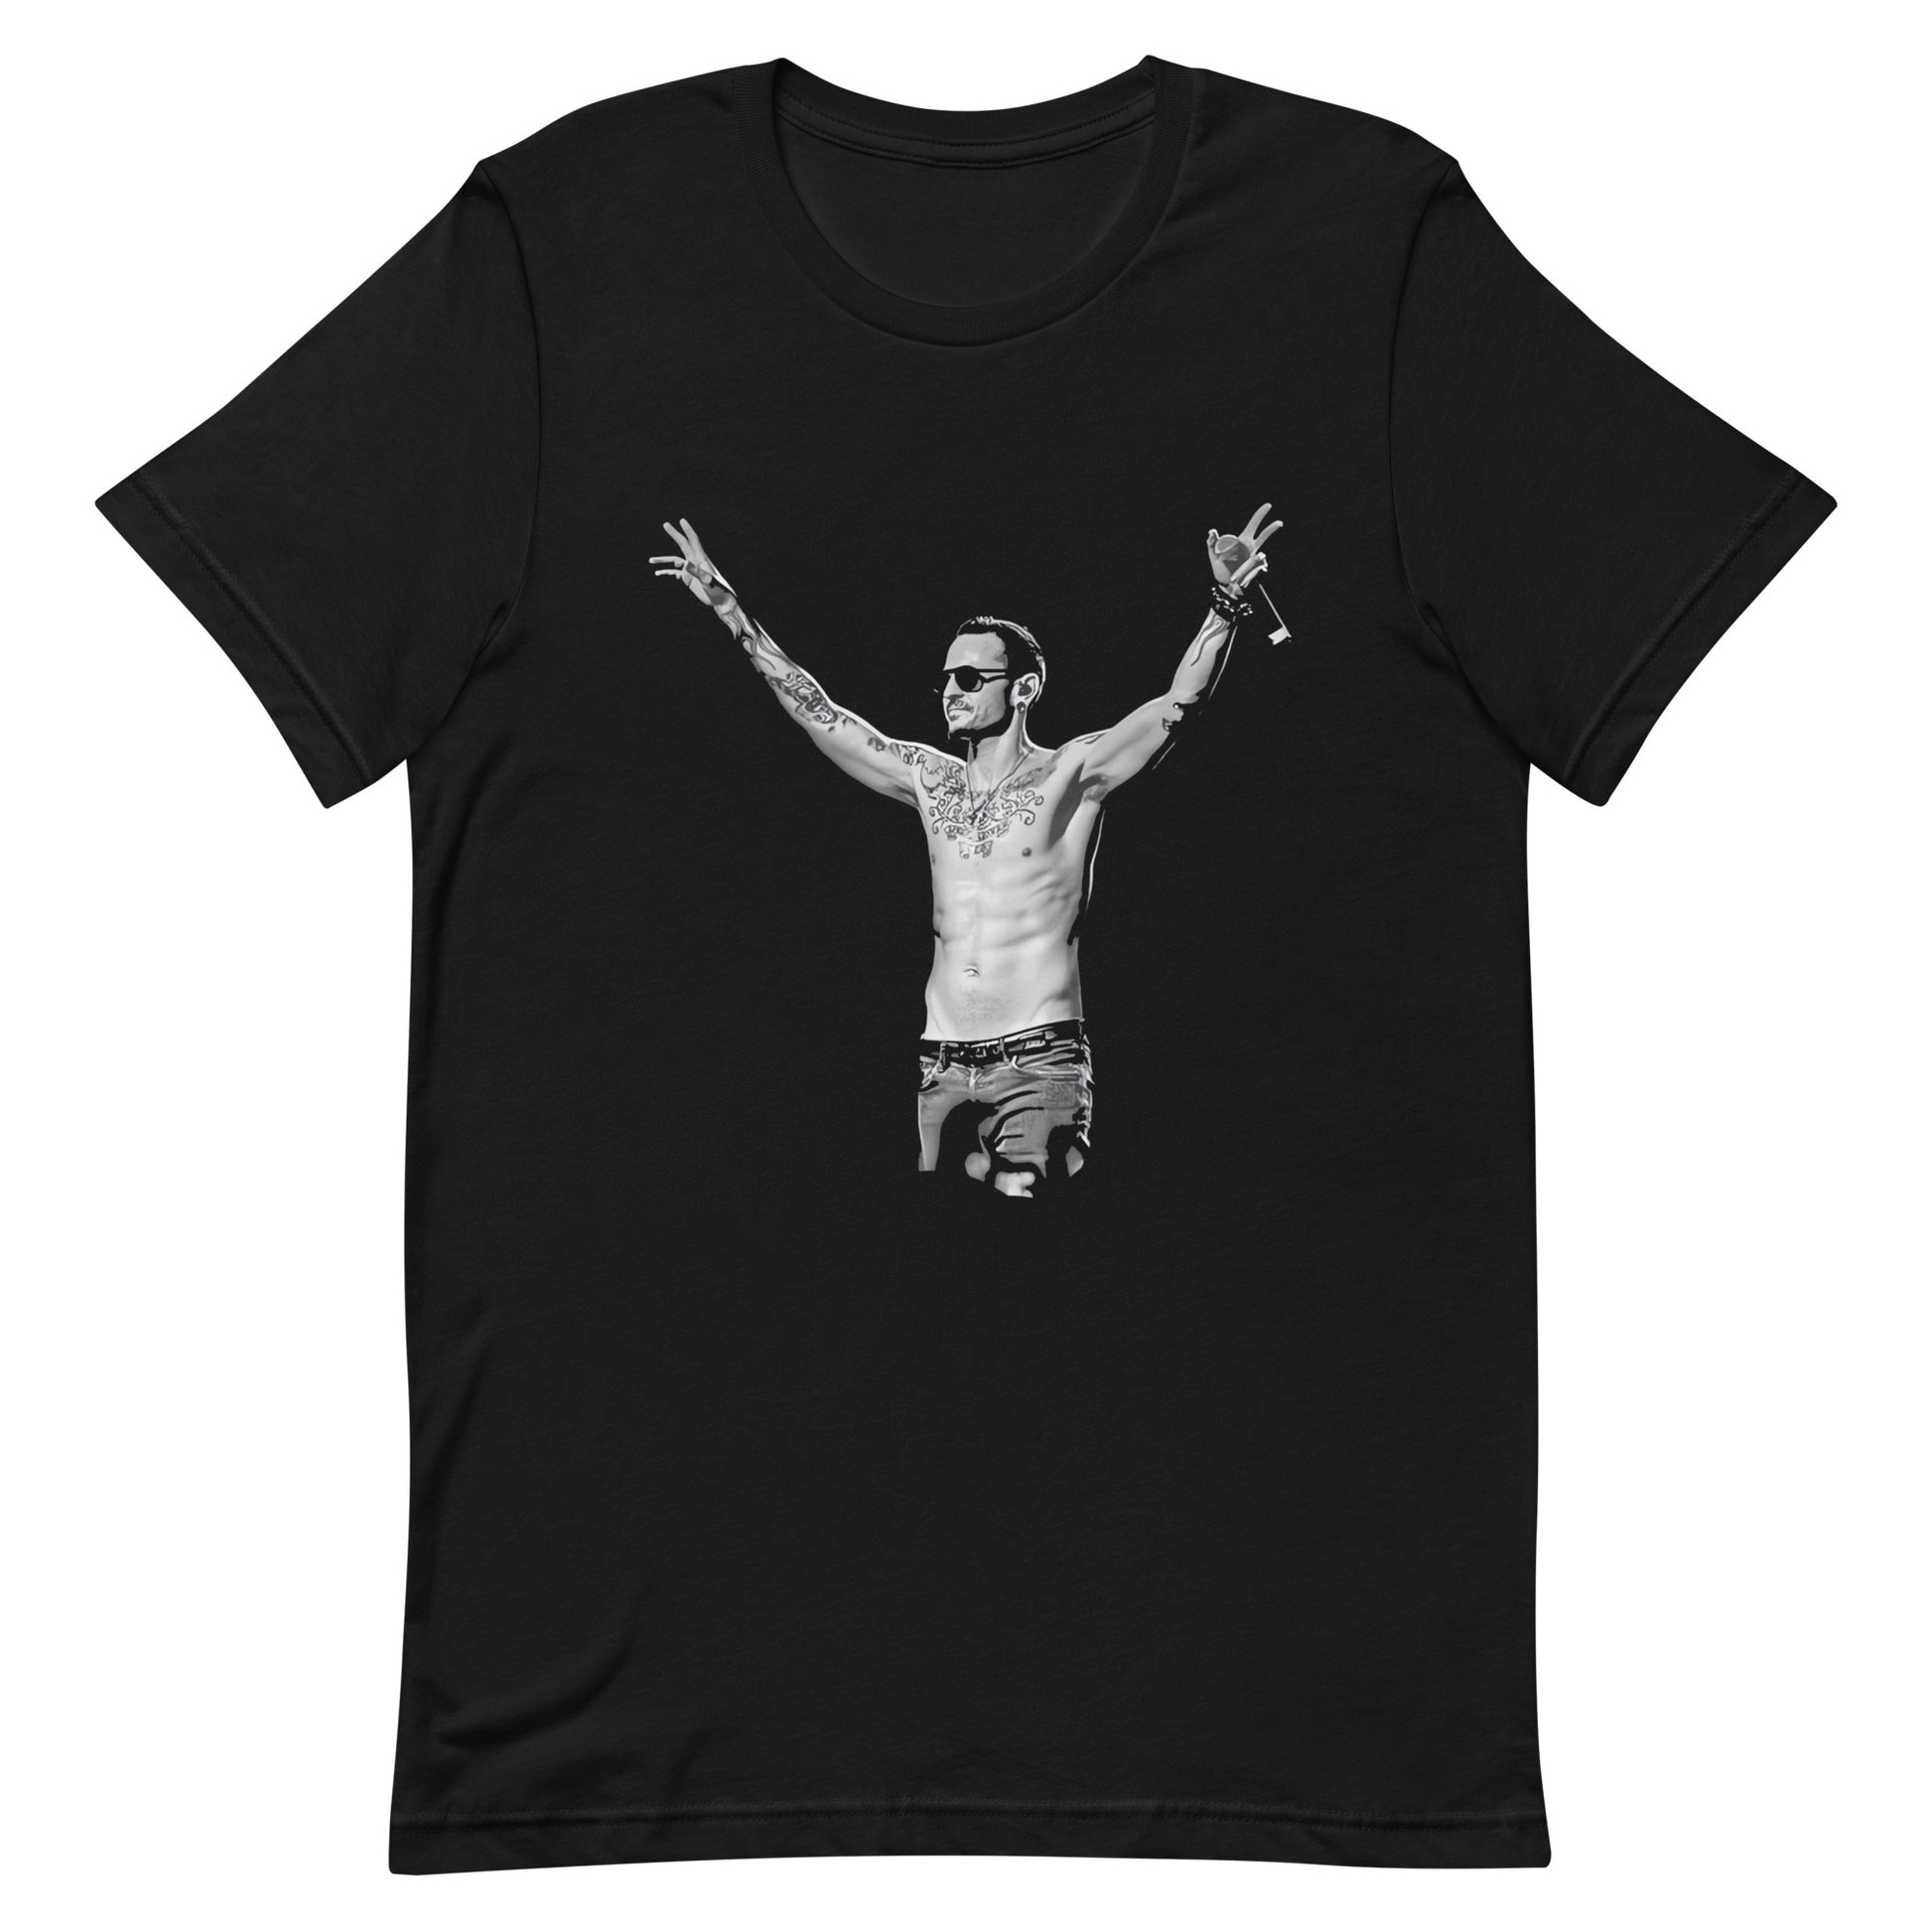 ¡Compra el mejor merchandising en Superstar! Encuentra diseños únicos y de alta calidad en camisetas únicas, Camiseta de chester bennington